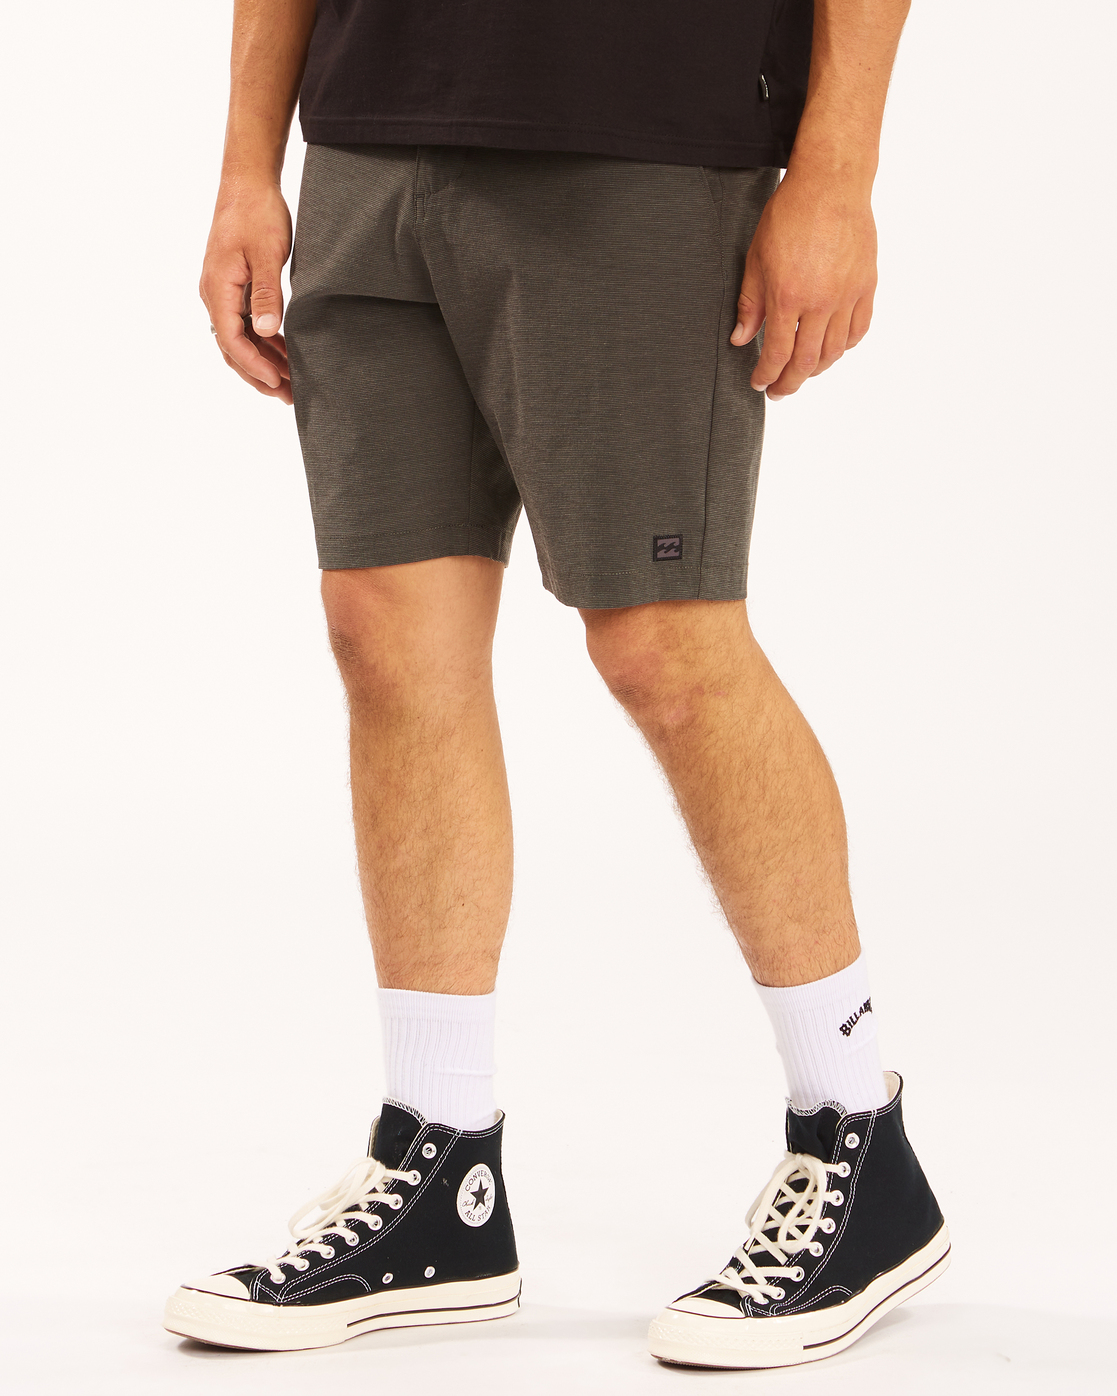 Bermuda/bañador BILLABONG pantalones cortos sumergibles para Hombre Crossfire Mid ASPHALT Ref. C1WK36 gris Martimpe Berart - Tienda de Moda en Gausach, Vielha, Valle de Aran